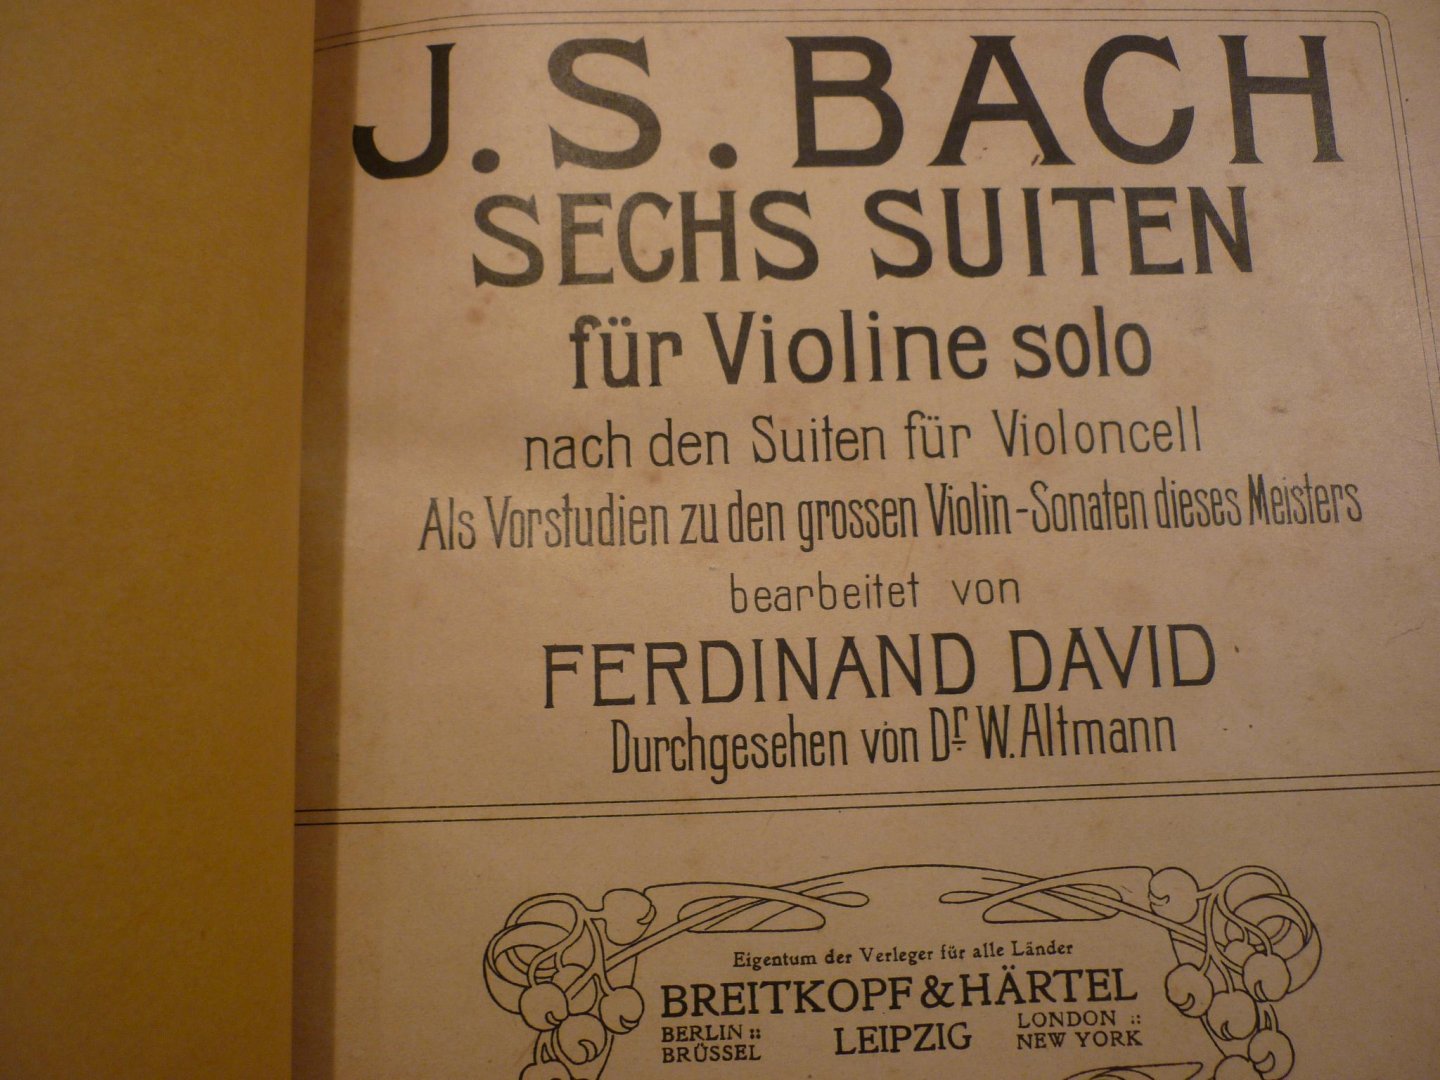 Bach; J. S. (1685-1750) - Sechs Suiten fur Violine solo; nach den suiten fur Violoncell + Chaconne (Als Vorstudien zu den grossen Violin-Sonaten dieses Meisters, bearbeitet von Fred. David. (Dr. W. Altmann)